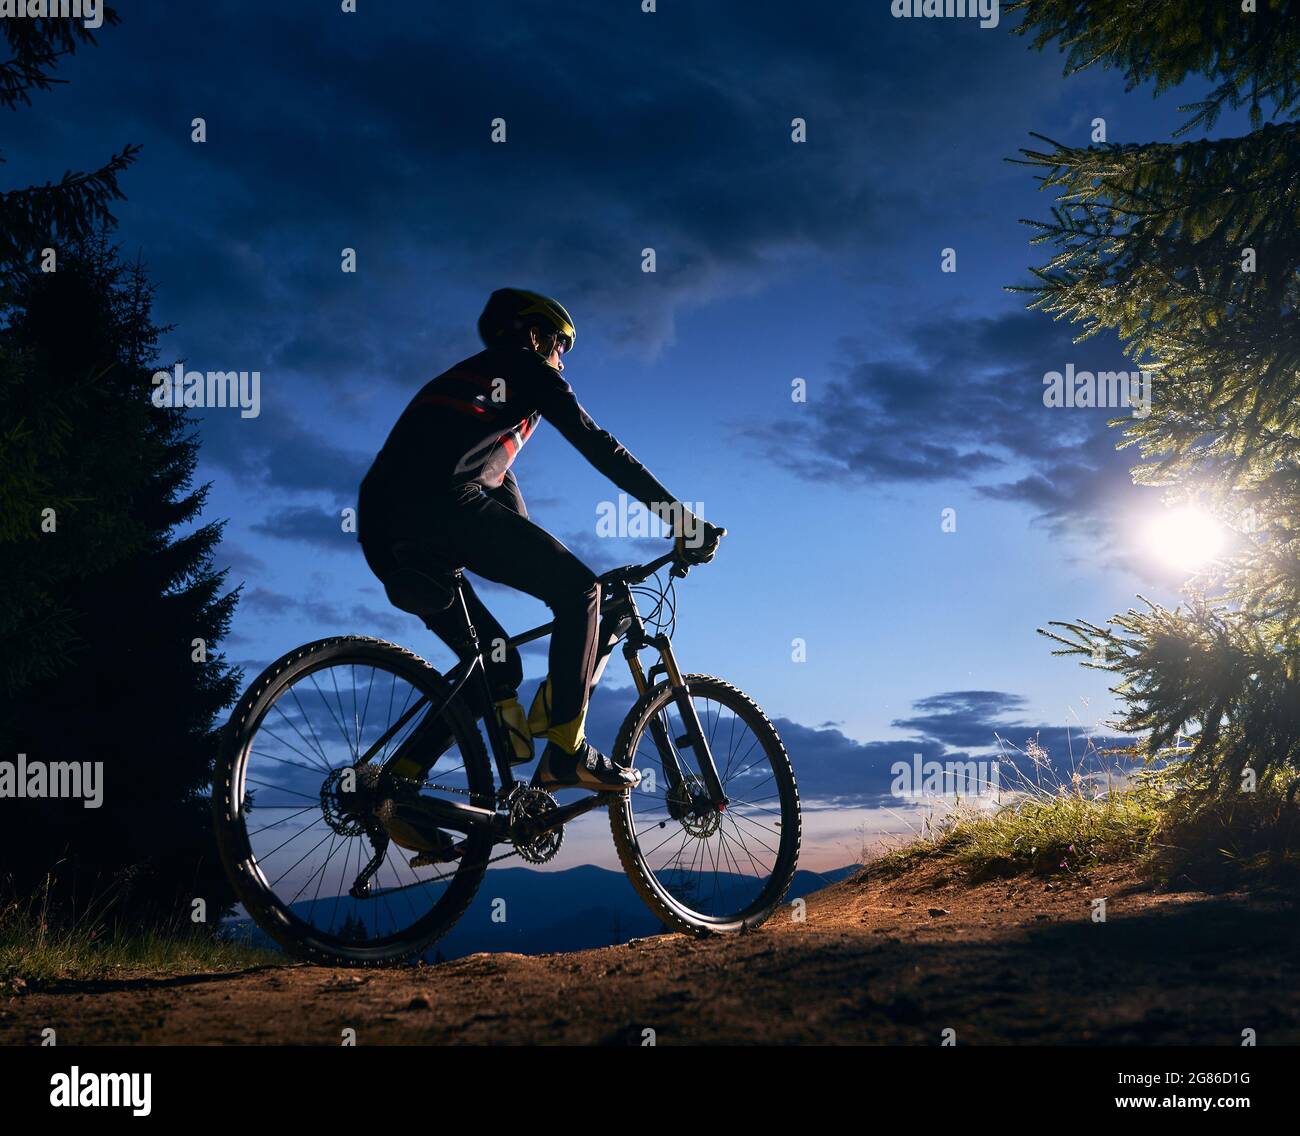 Rückansicht eines Radfahrers unter blauem Abendhimmel mit Wolken. Silhouette des männlichen Radfahrers Fahrrad auf dem Weg in der Nacht Bergwald. Konzept von Sport, Radfahren und aktiver Freizeit. Stockfoto